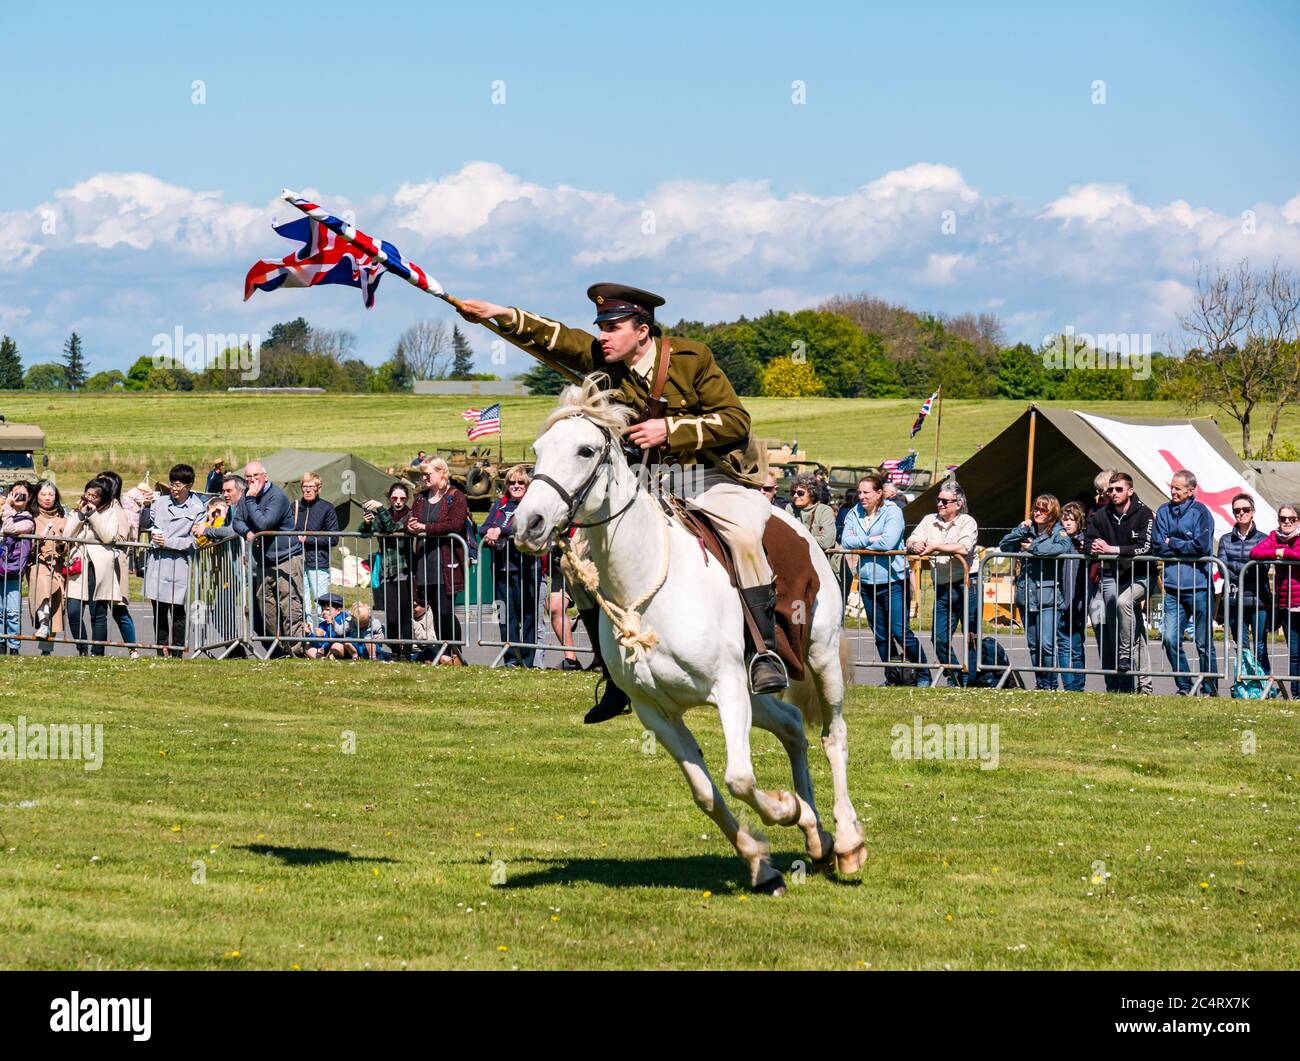 L'équipe de cascades équestres les amis d'Onno avec un soldat qui charge à cheval avec Union Jack à l'événement de guerre, East Fortune, East Lothian, Écosse, Royaume-Uni Banque D'Images